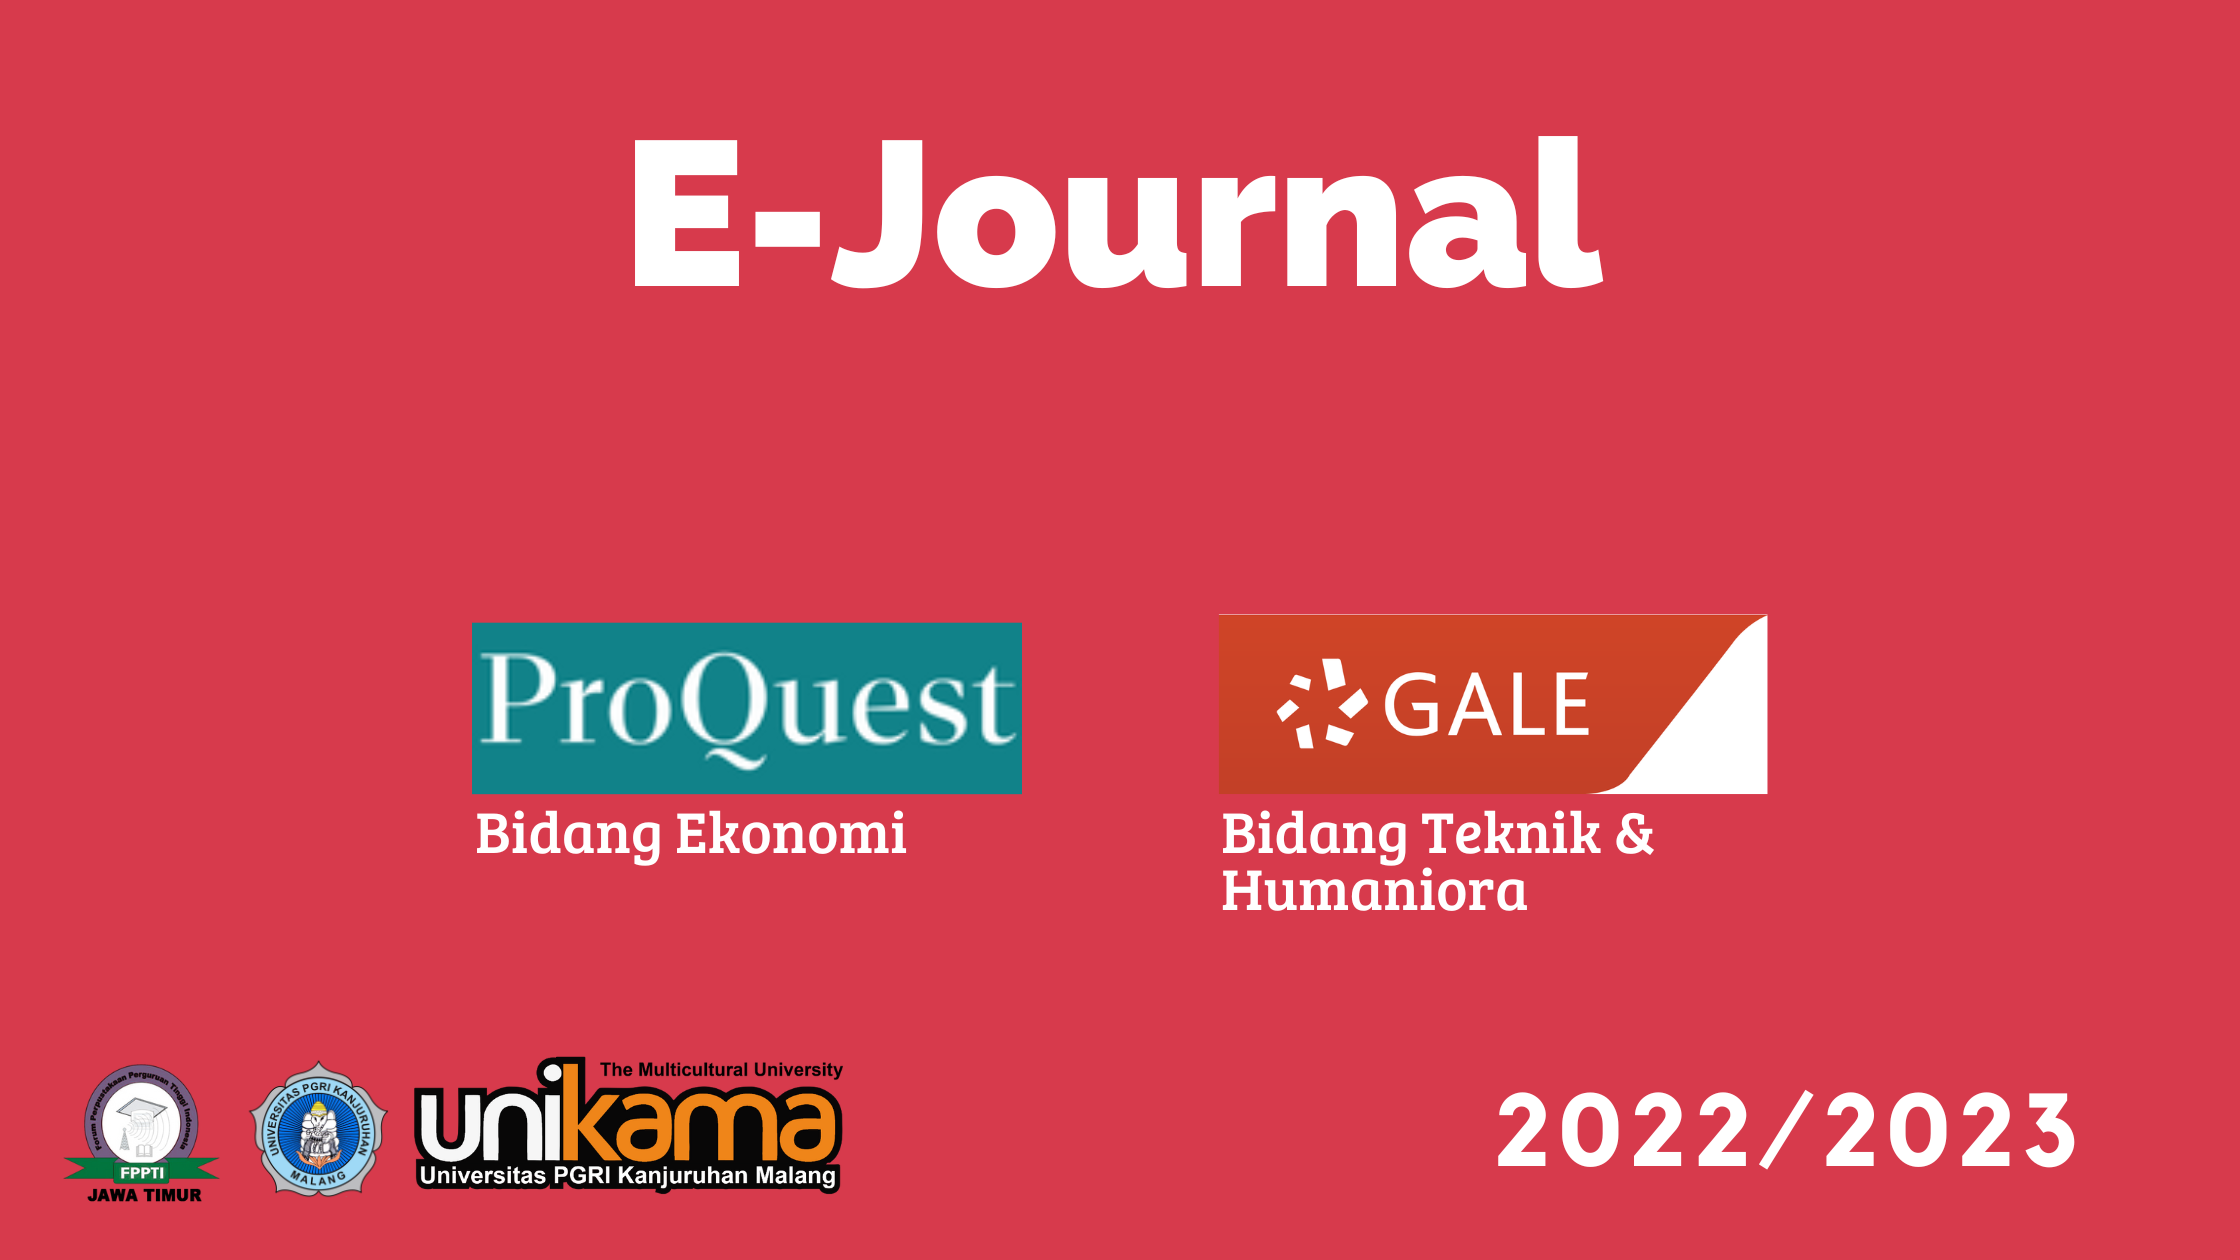 Langganan E-Journal 2022/2023